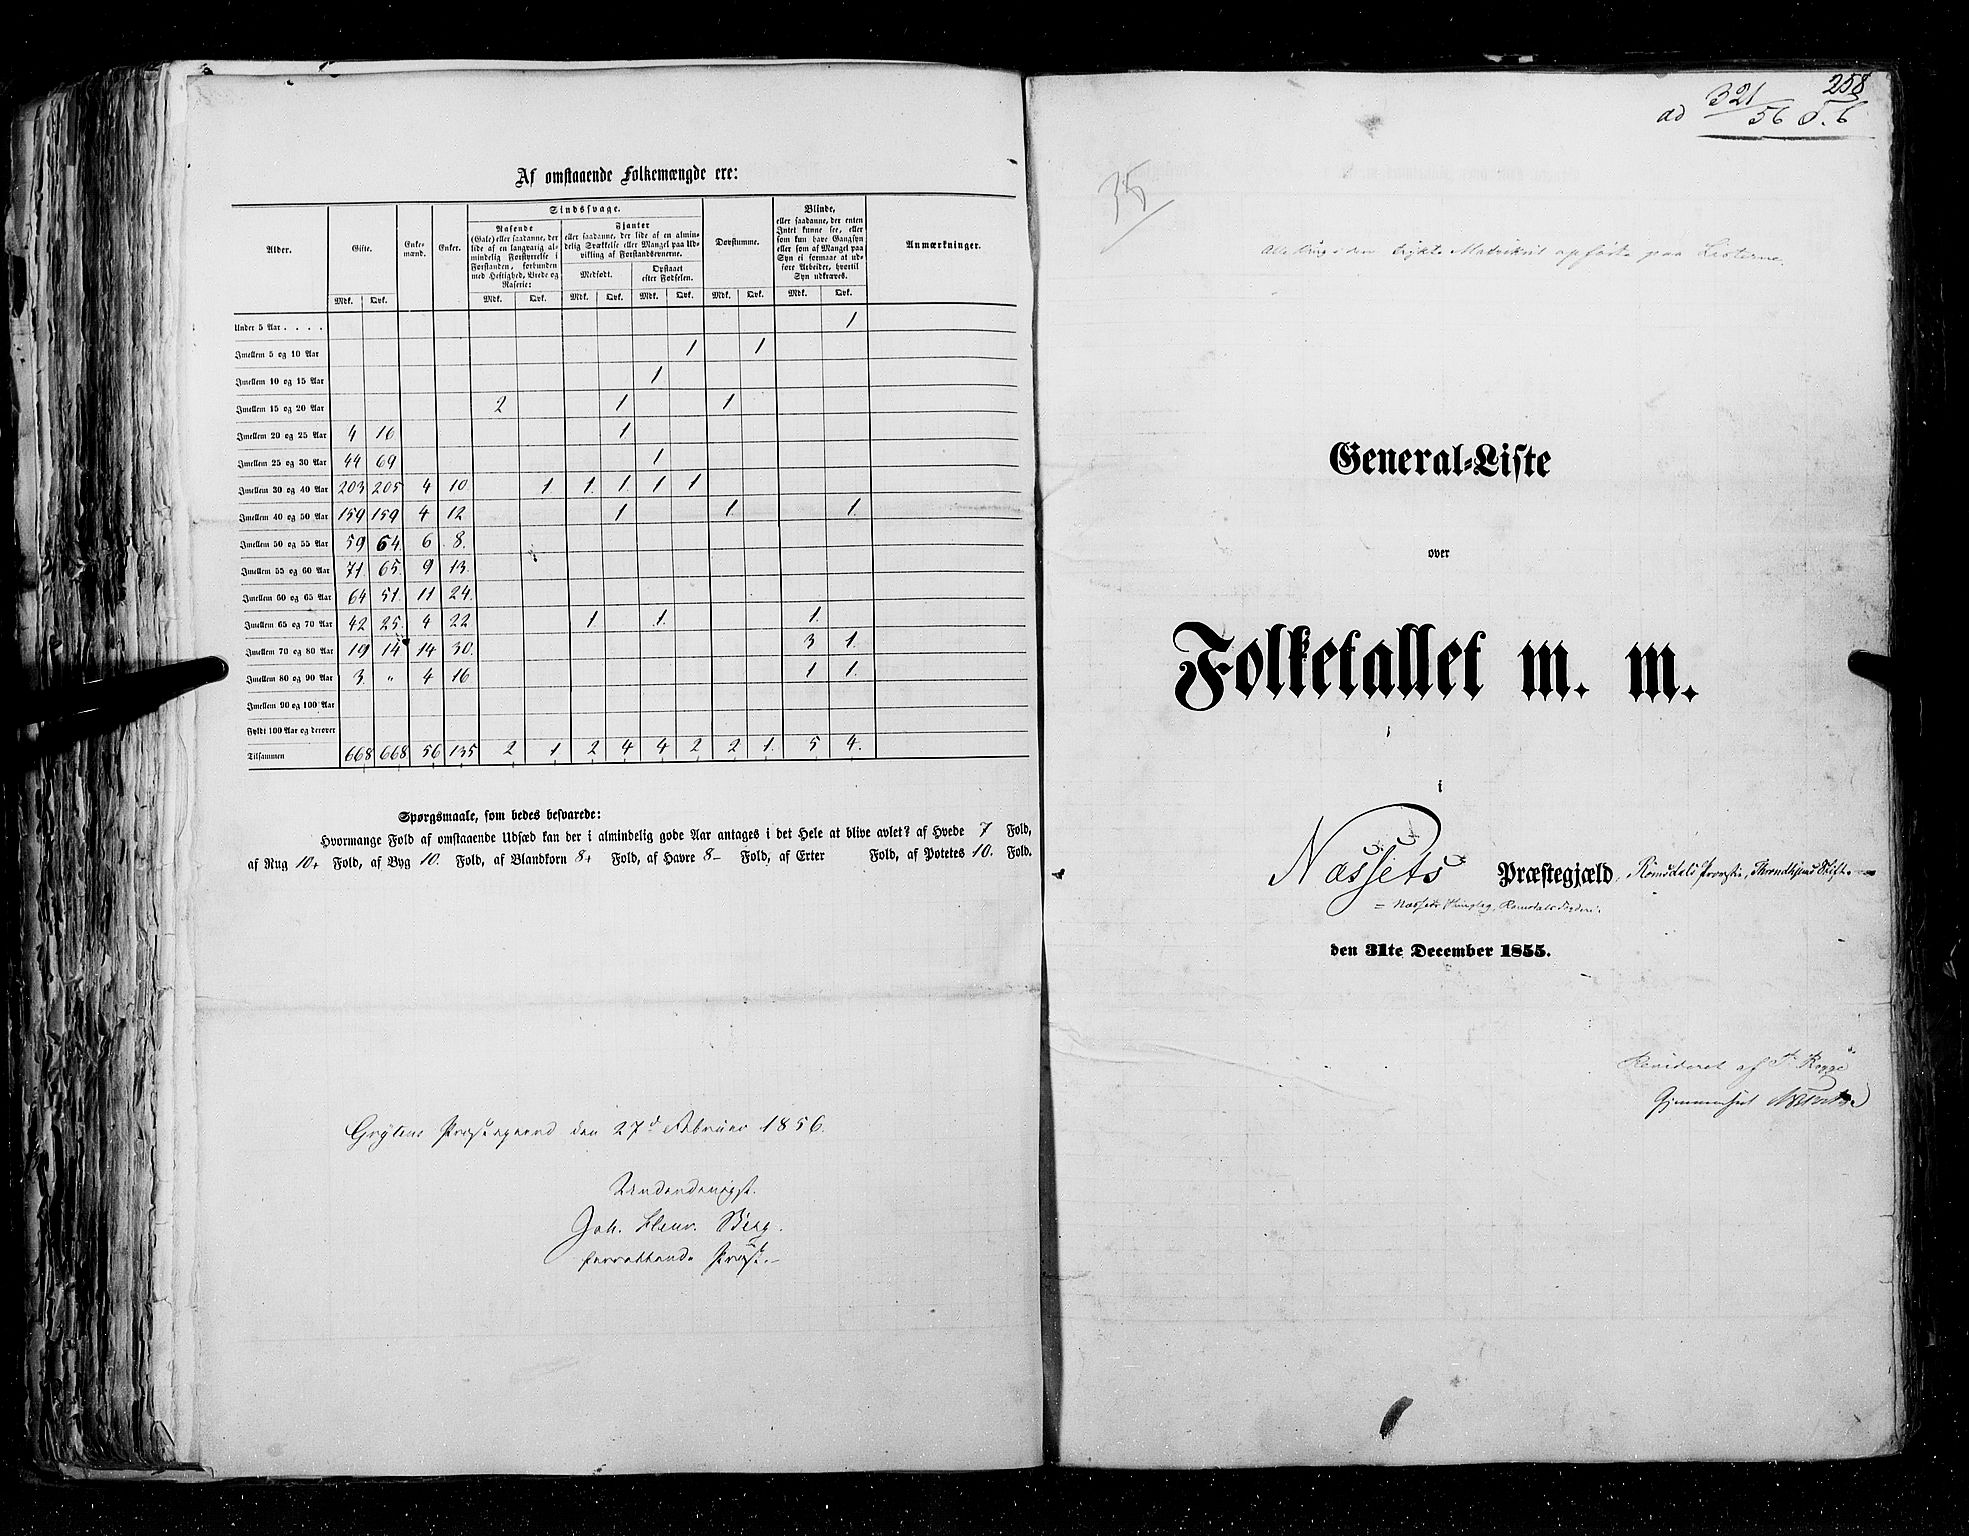 RA, Folketellingen 1855, bind 5: Nordre Bergenhus amt, Romsdal amt og Søndre Trondhjem amt, 1855, s. 258